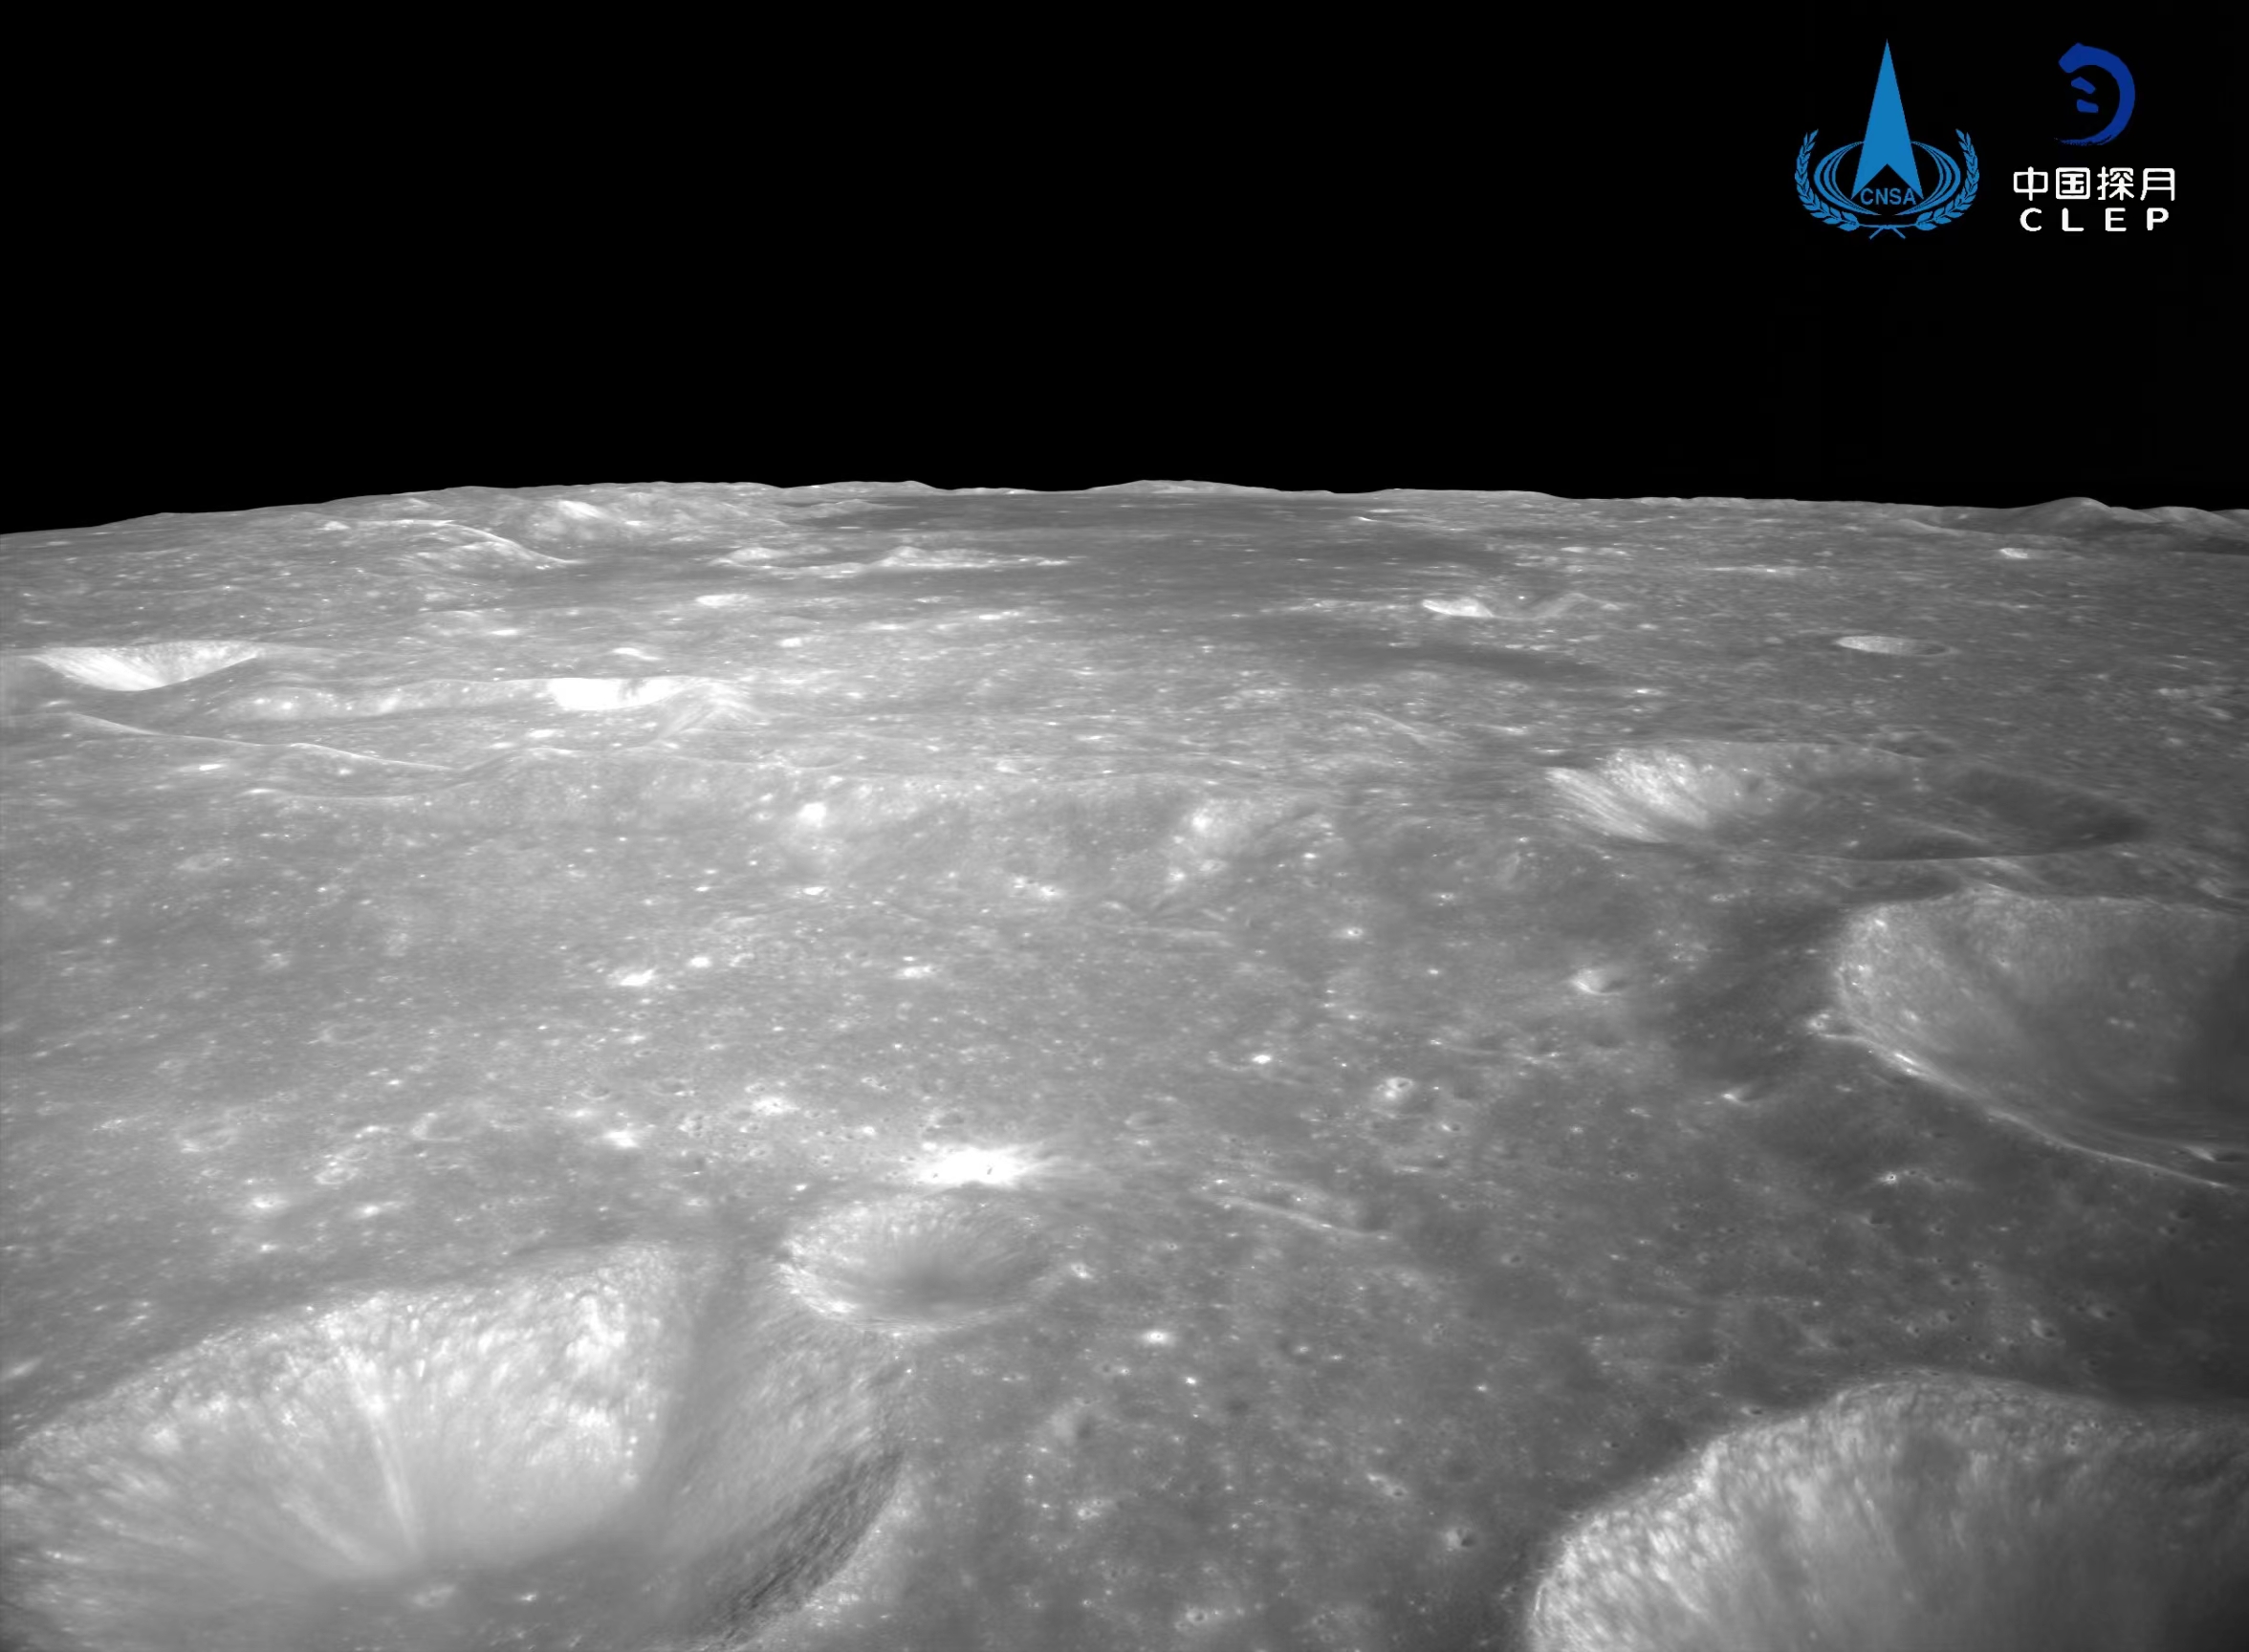 该图由降落相机刚开机时拍摄，图像上方是着陆点北部查菲环形山，图像显示着陆器底部相对平坦，拍摄的月背区域上部中间为暗色的玄武岩分布区。<p style=